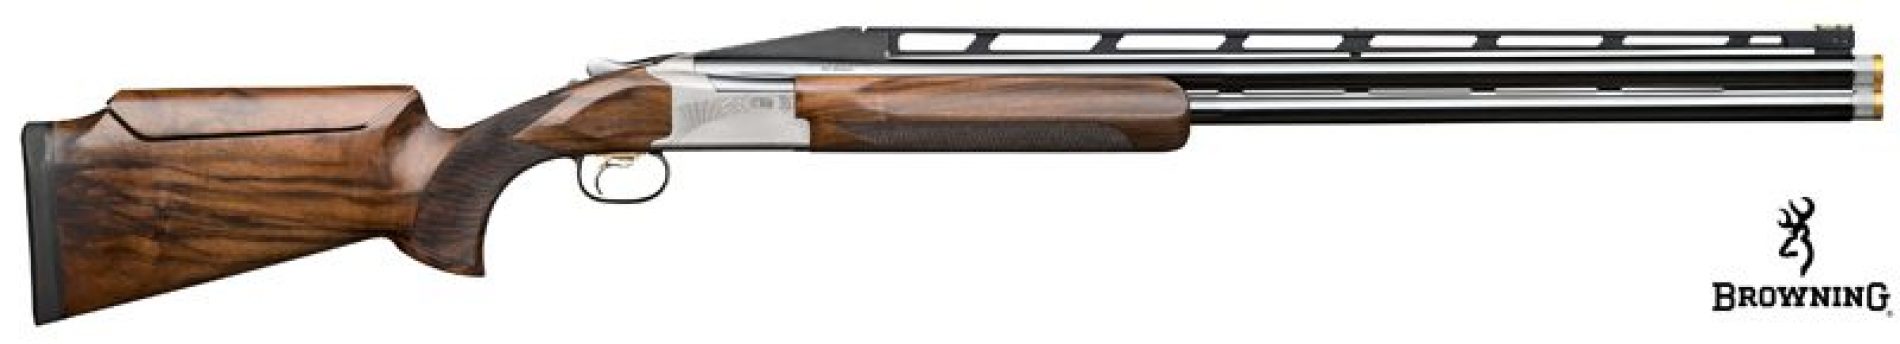 Escopeta superpuesta B725 Pro Trap Ajustable High Rib, para perfeccionar la armonía entre tirador y arma